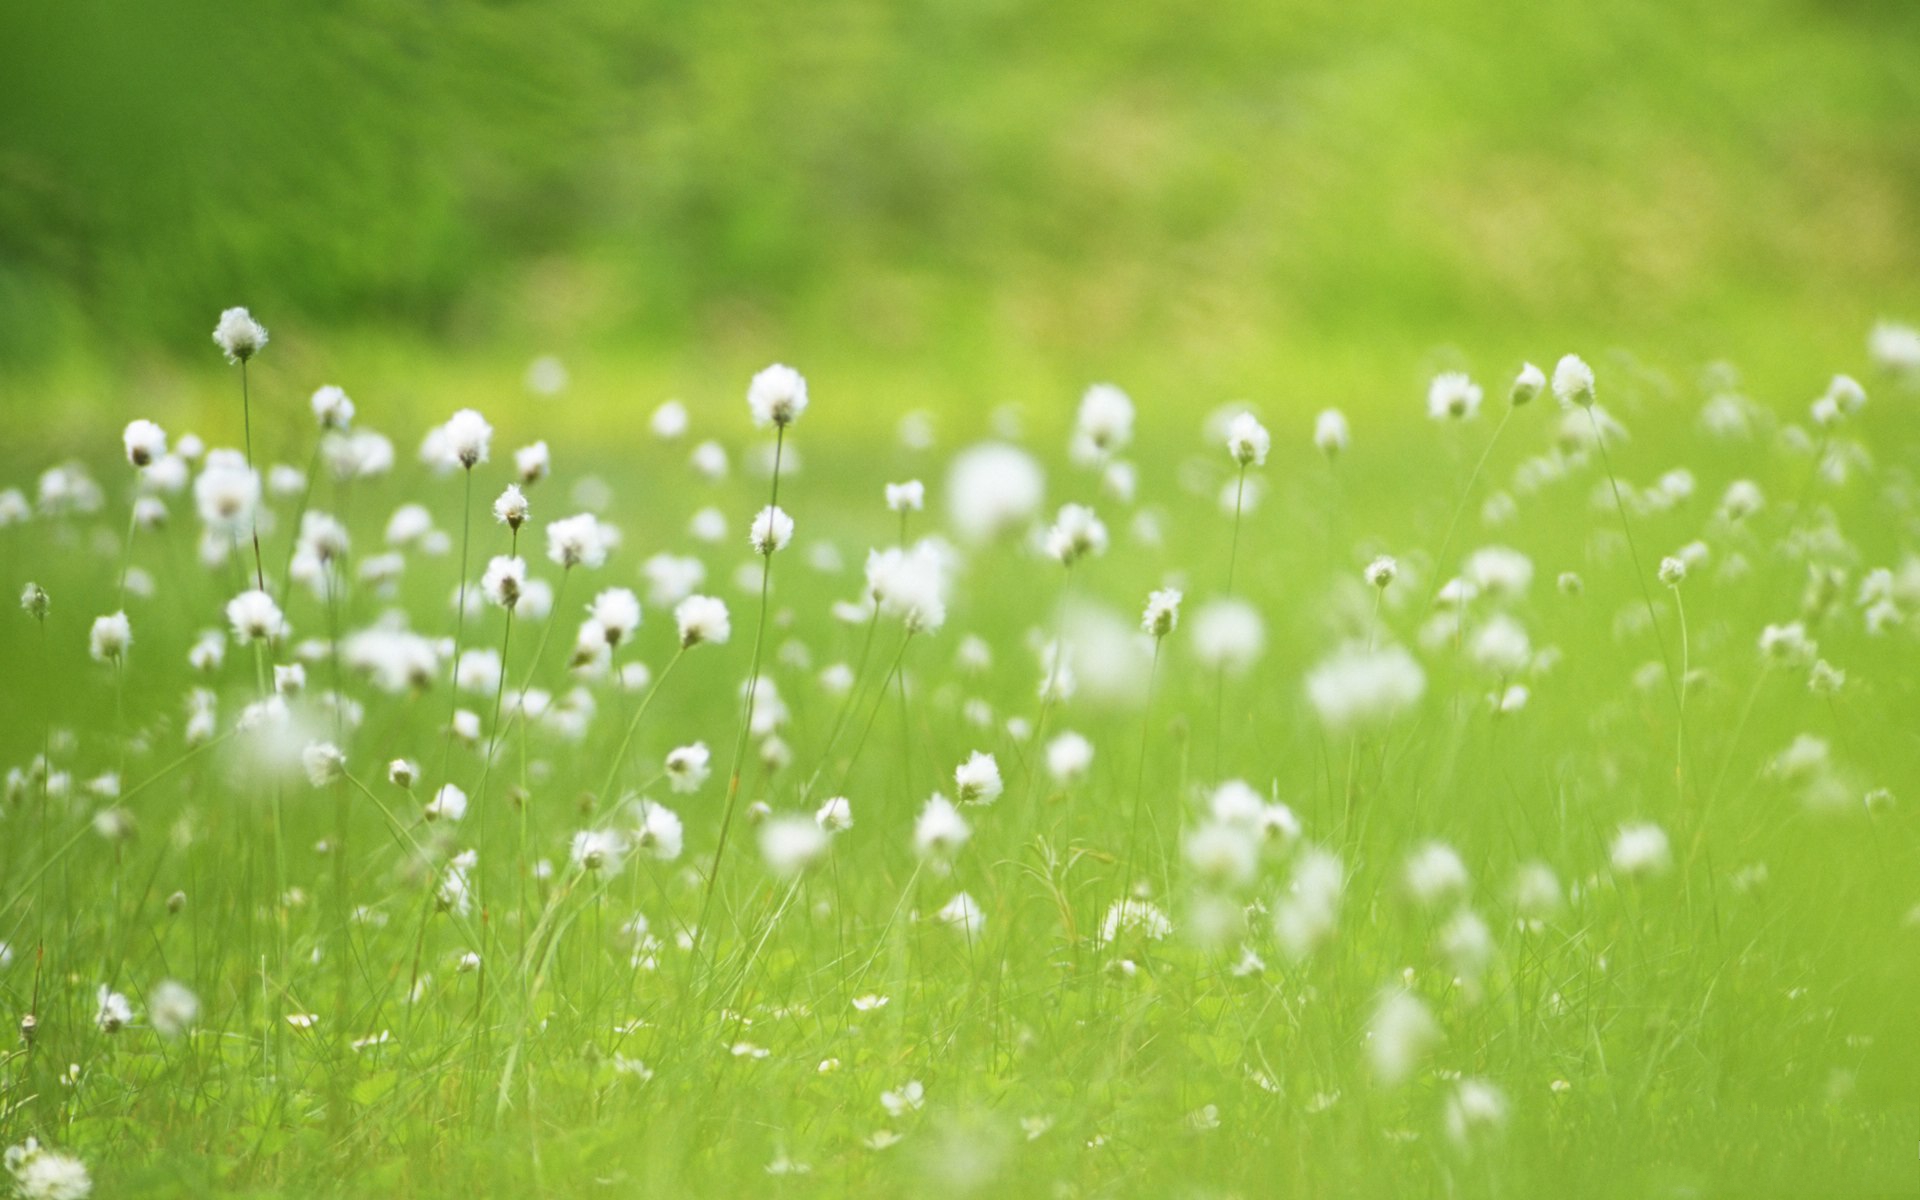 flower in grass